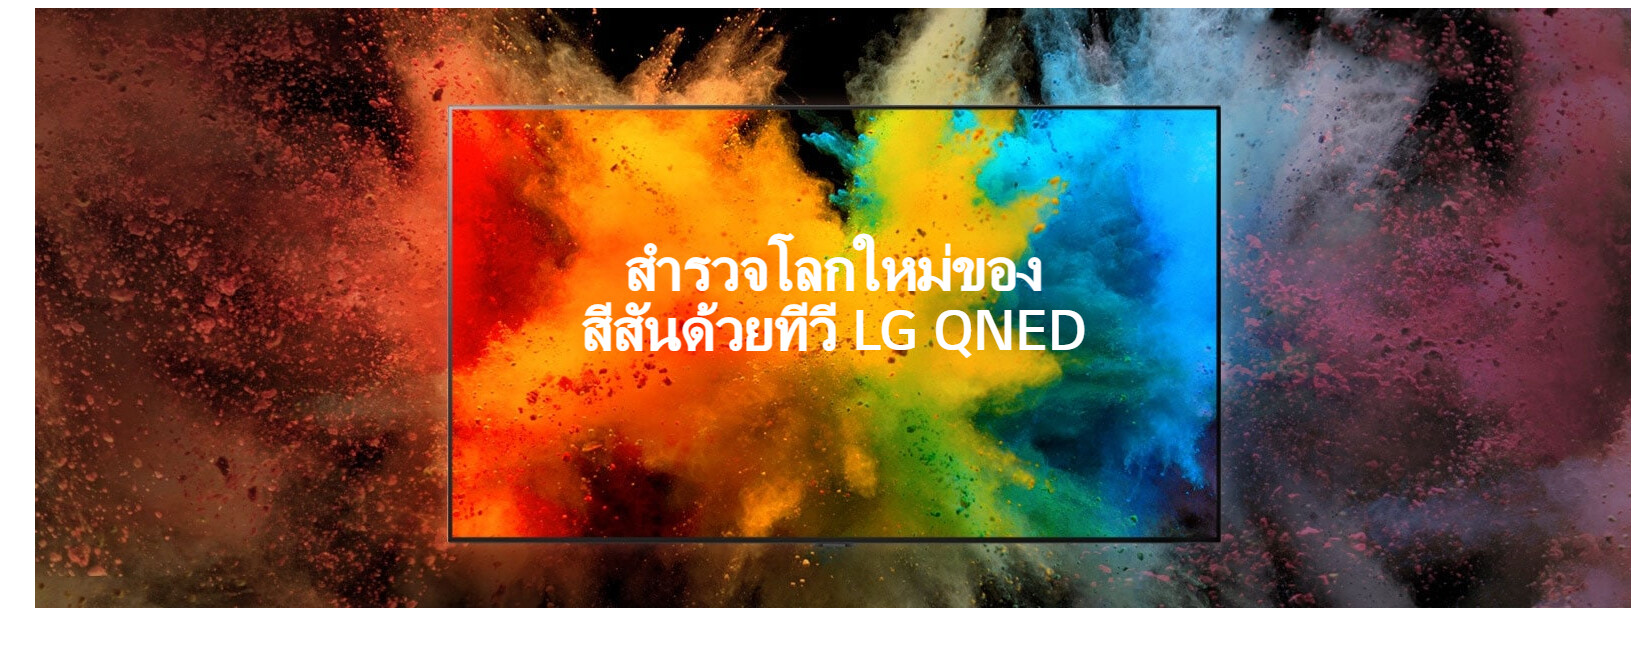 ข้อมูลเกี่ยวกับ LG NanoCell 4K Smart TV รุ่น 65NANO80SQA|NanoCell Display l Local Dimming l HDR10 Pro l LG ThinQ AI l Google Assistant